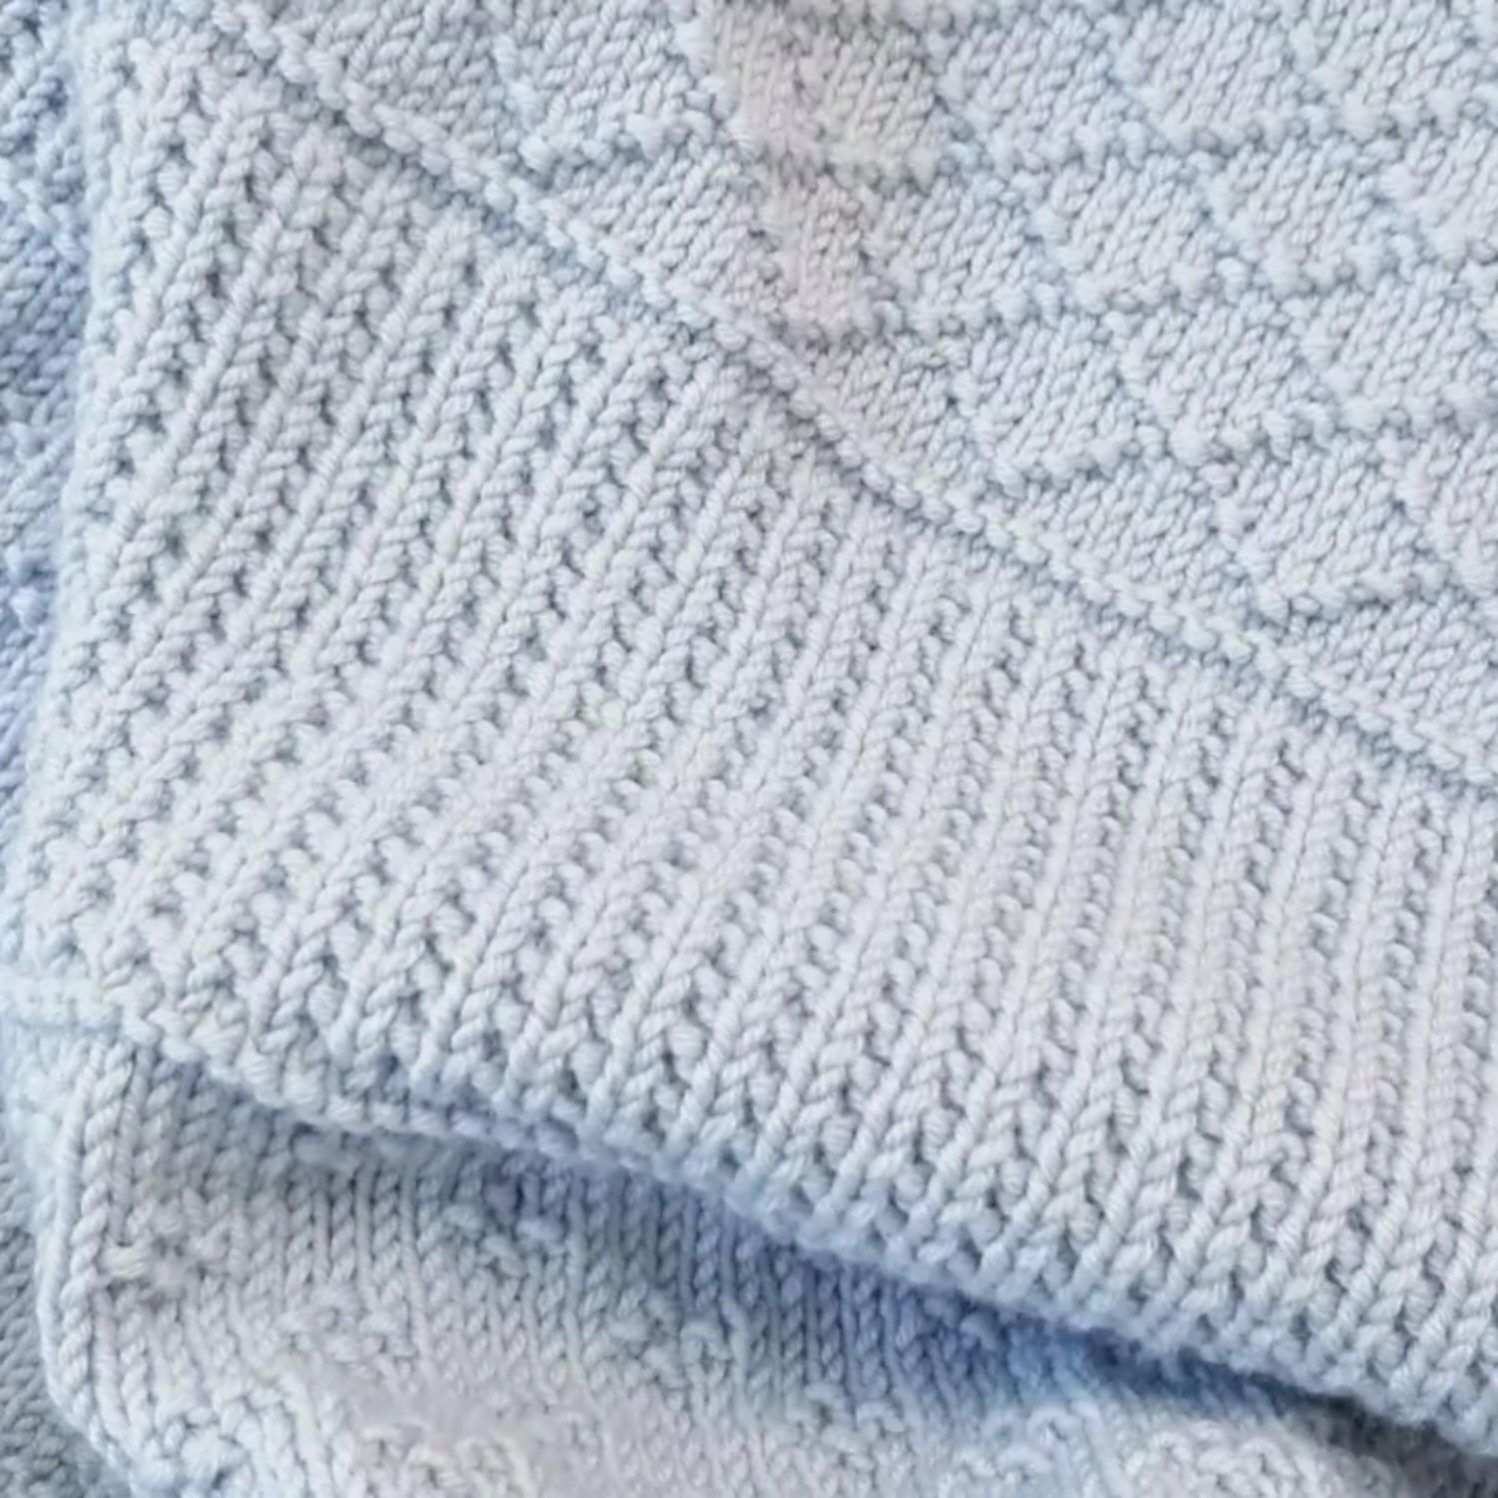 Einfache Decke Strickmuster Jaspis Decke In 2020 Decke Stricken Einfach Decke Stricken Hakeln Gestrickte Babydecke